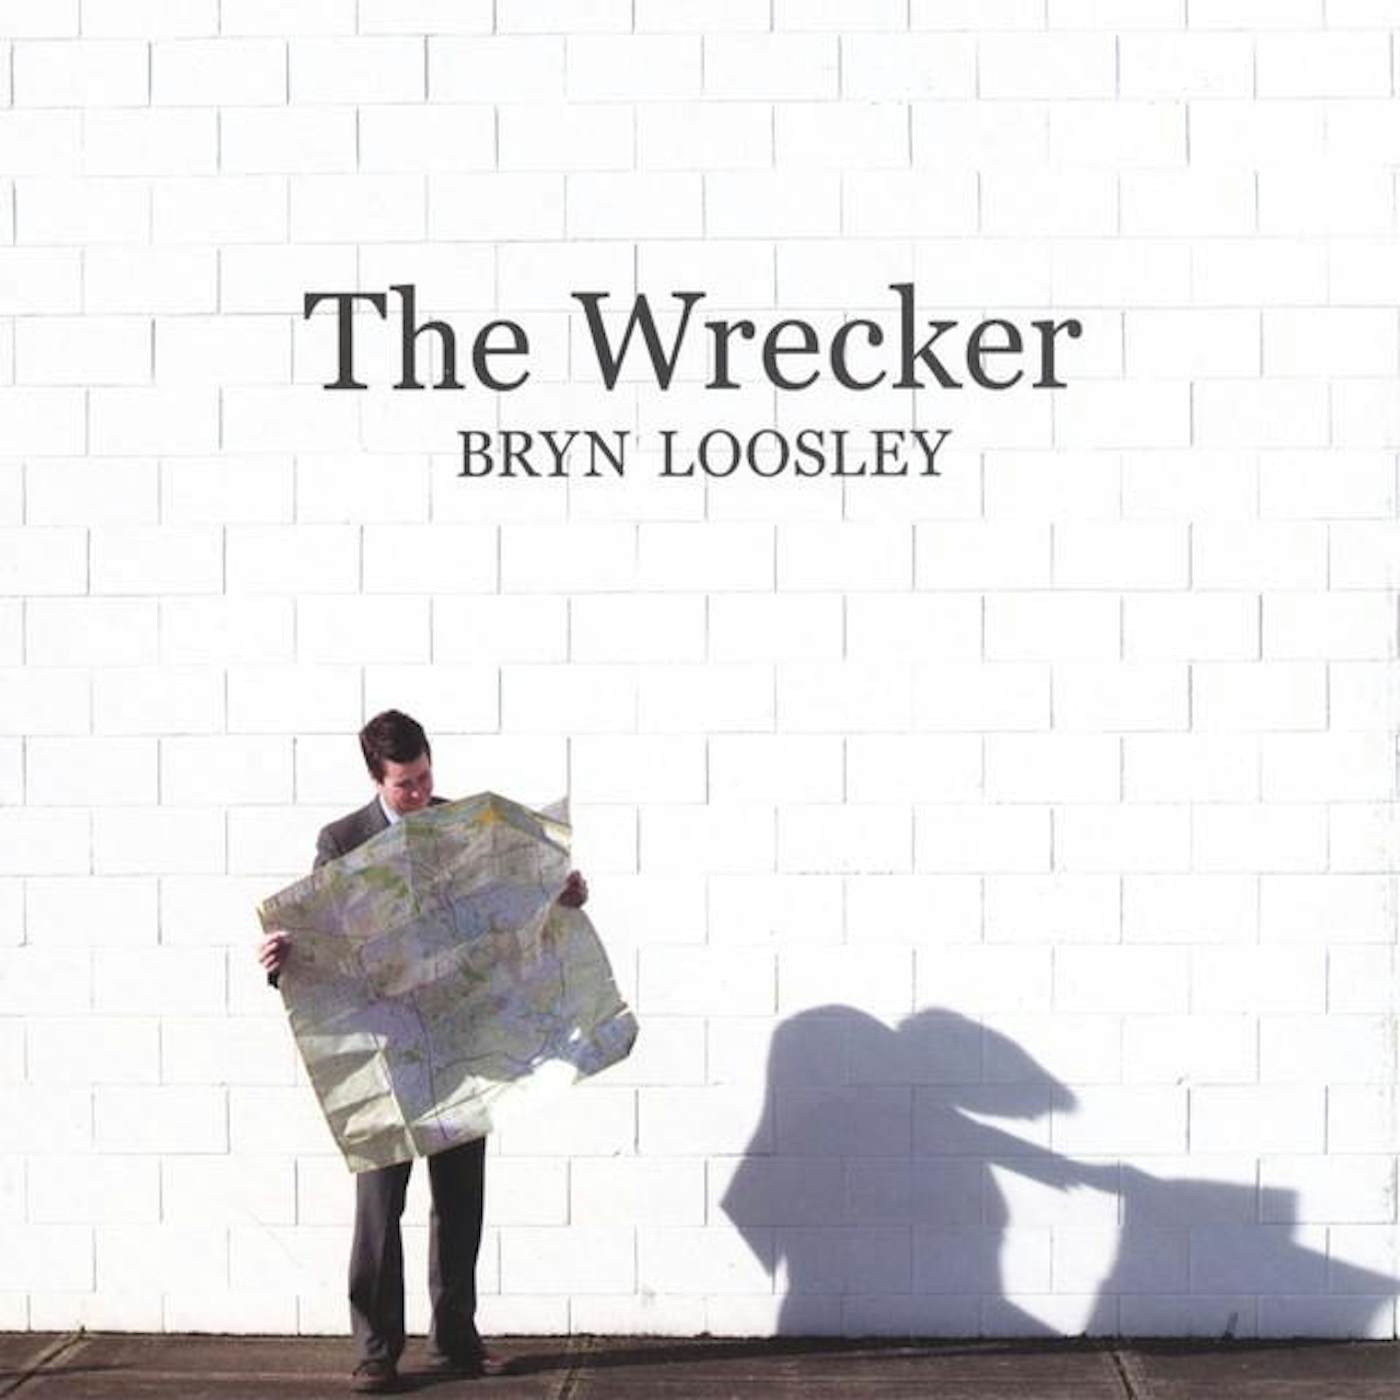 Bryn Loosley